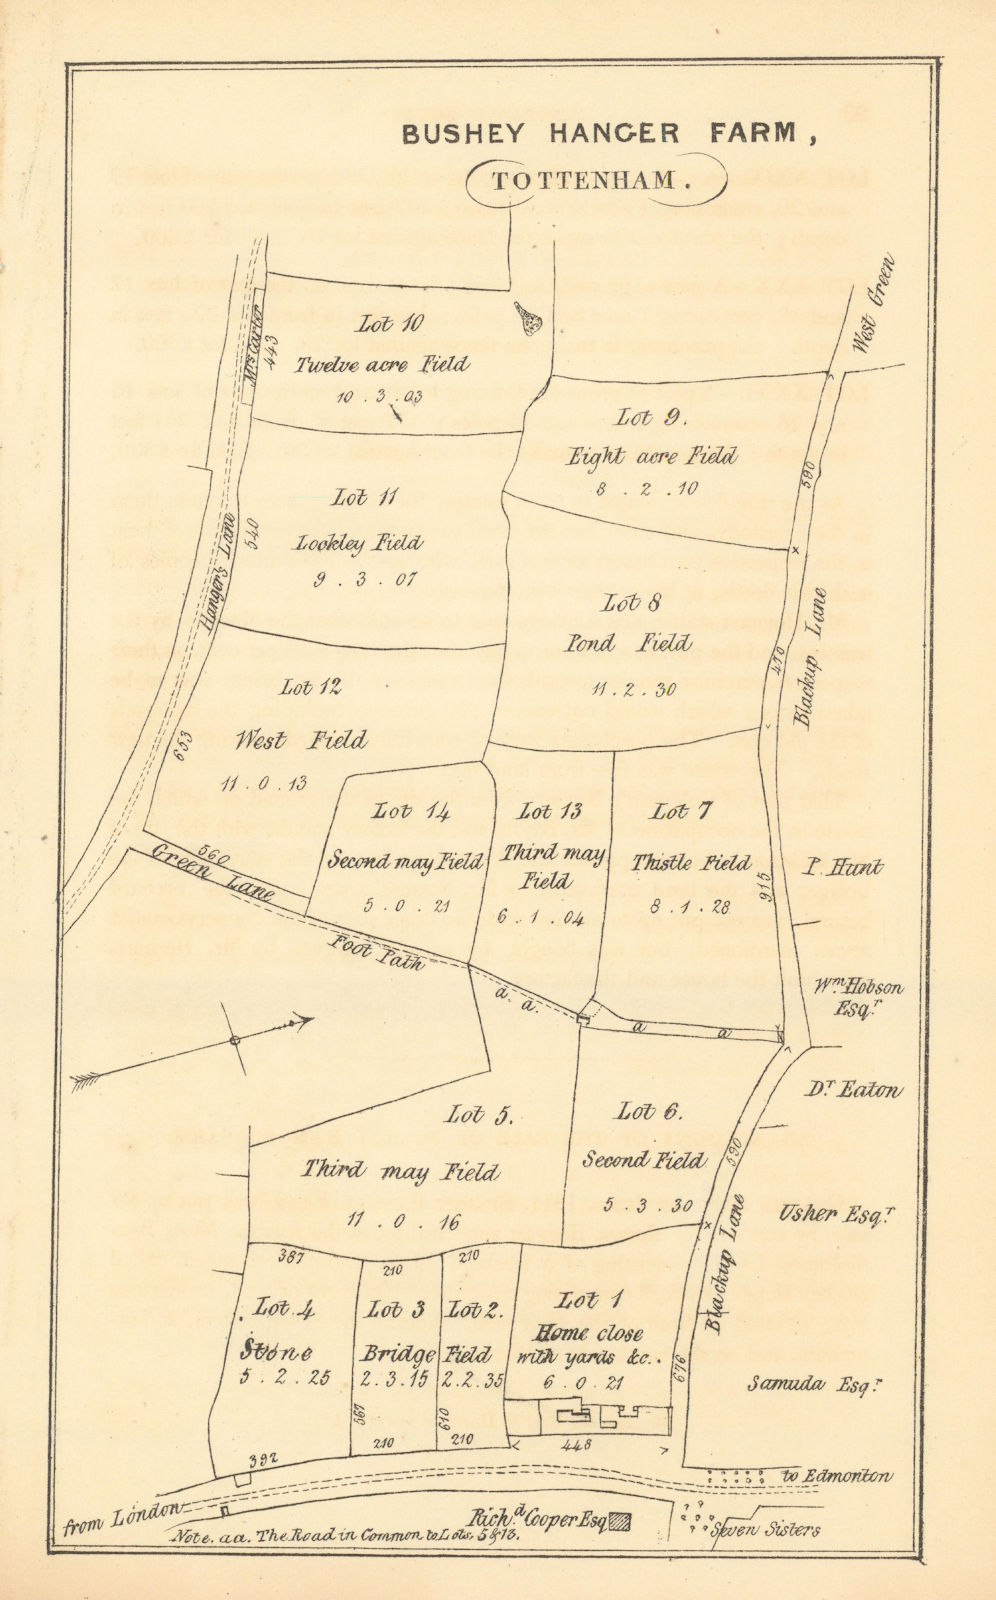 Bushey Hanger Farm, Seven Sisters, Tottenham. West Green/St Ann's Roads 1840 map